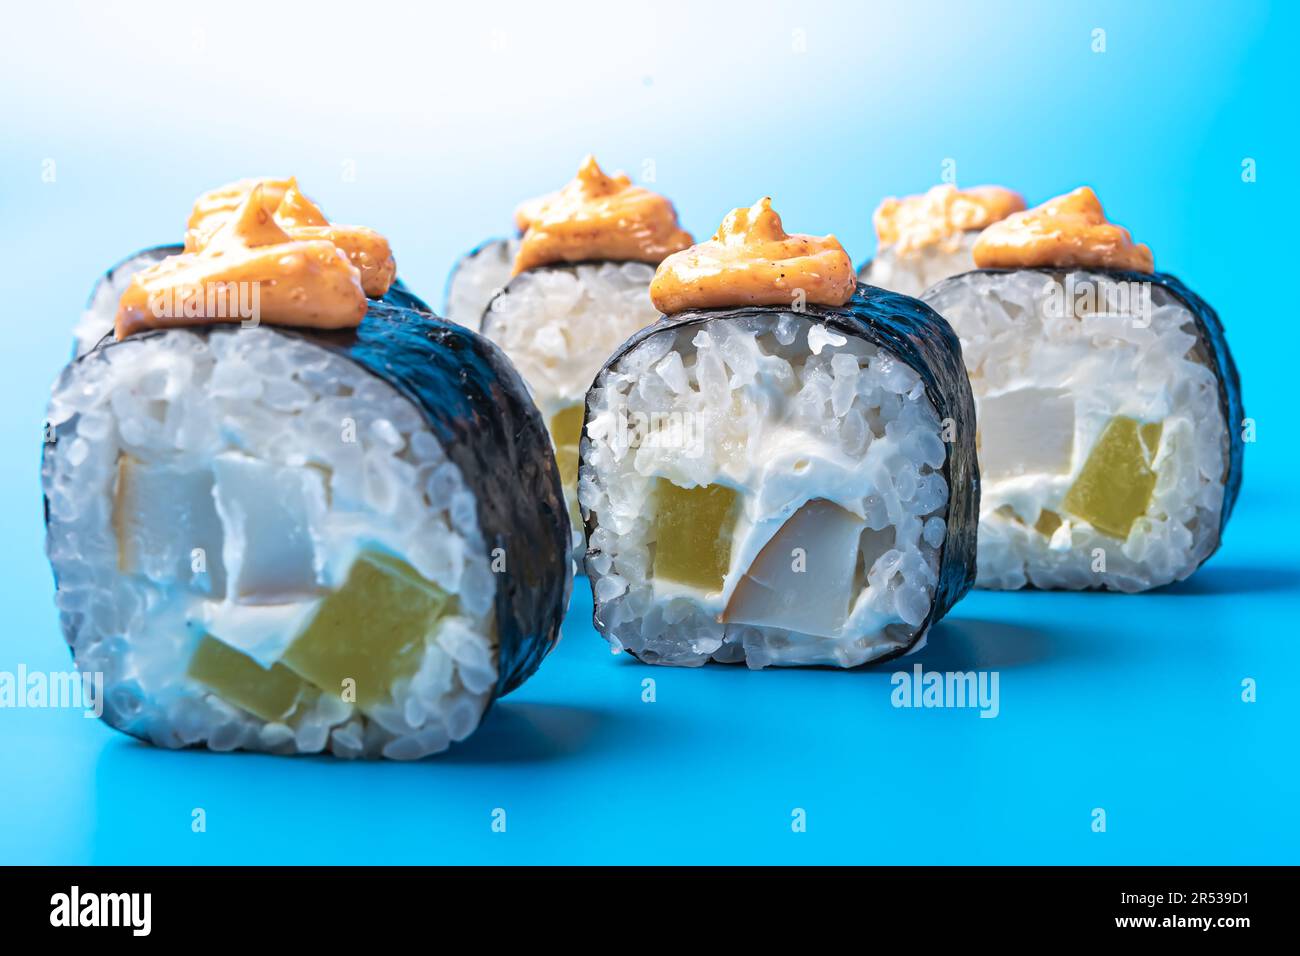 Petits pains à sushi au thon, au daikon, au fromage et à la sauce épicée, sur fond bleu. Photo de haute qualité Banque D'Images